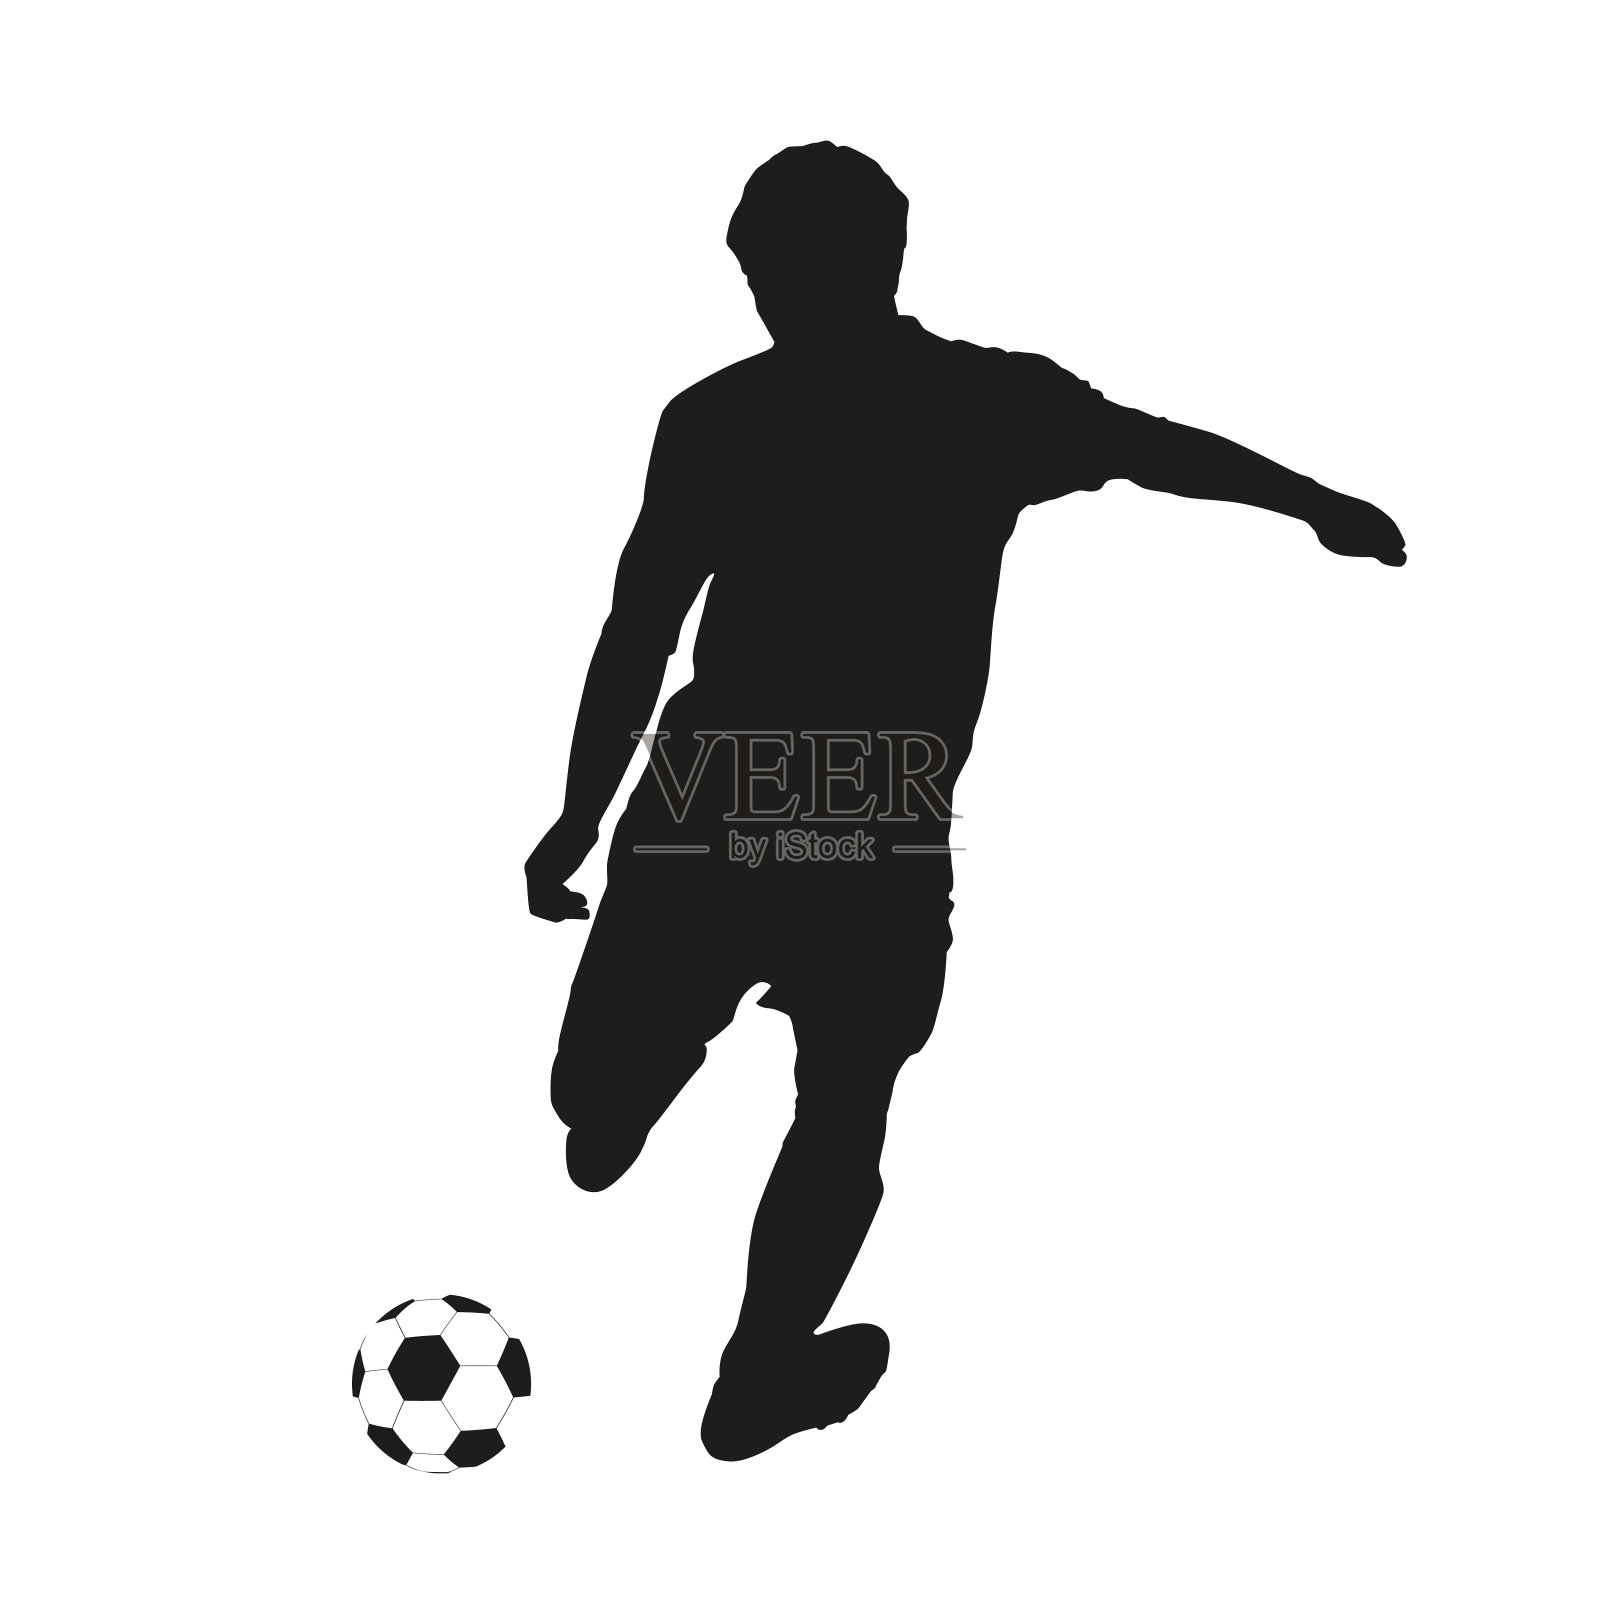 一个足球运动员射向球门的矢量剪影设计元素图片